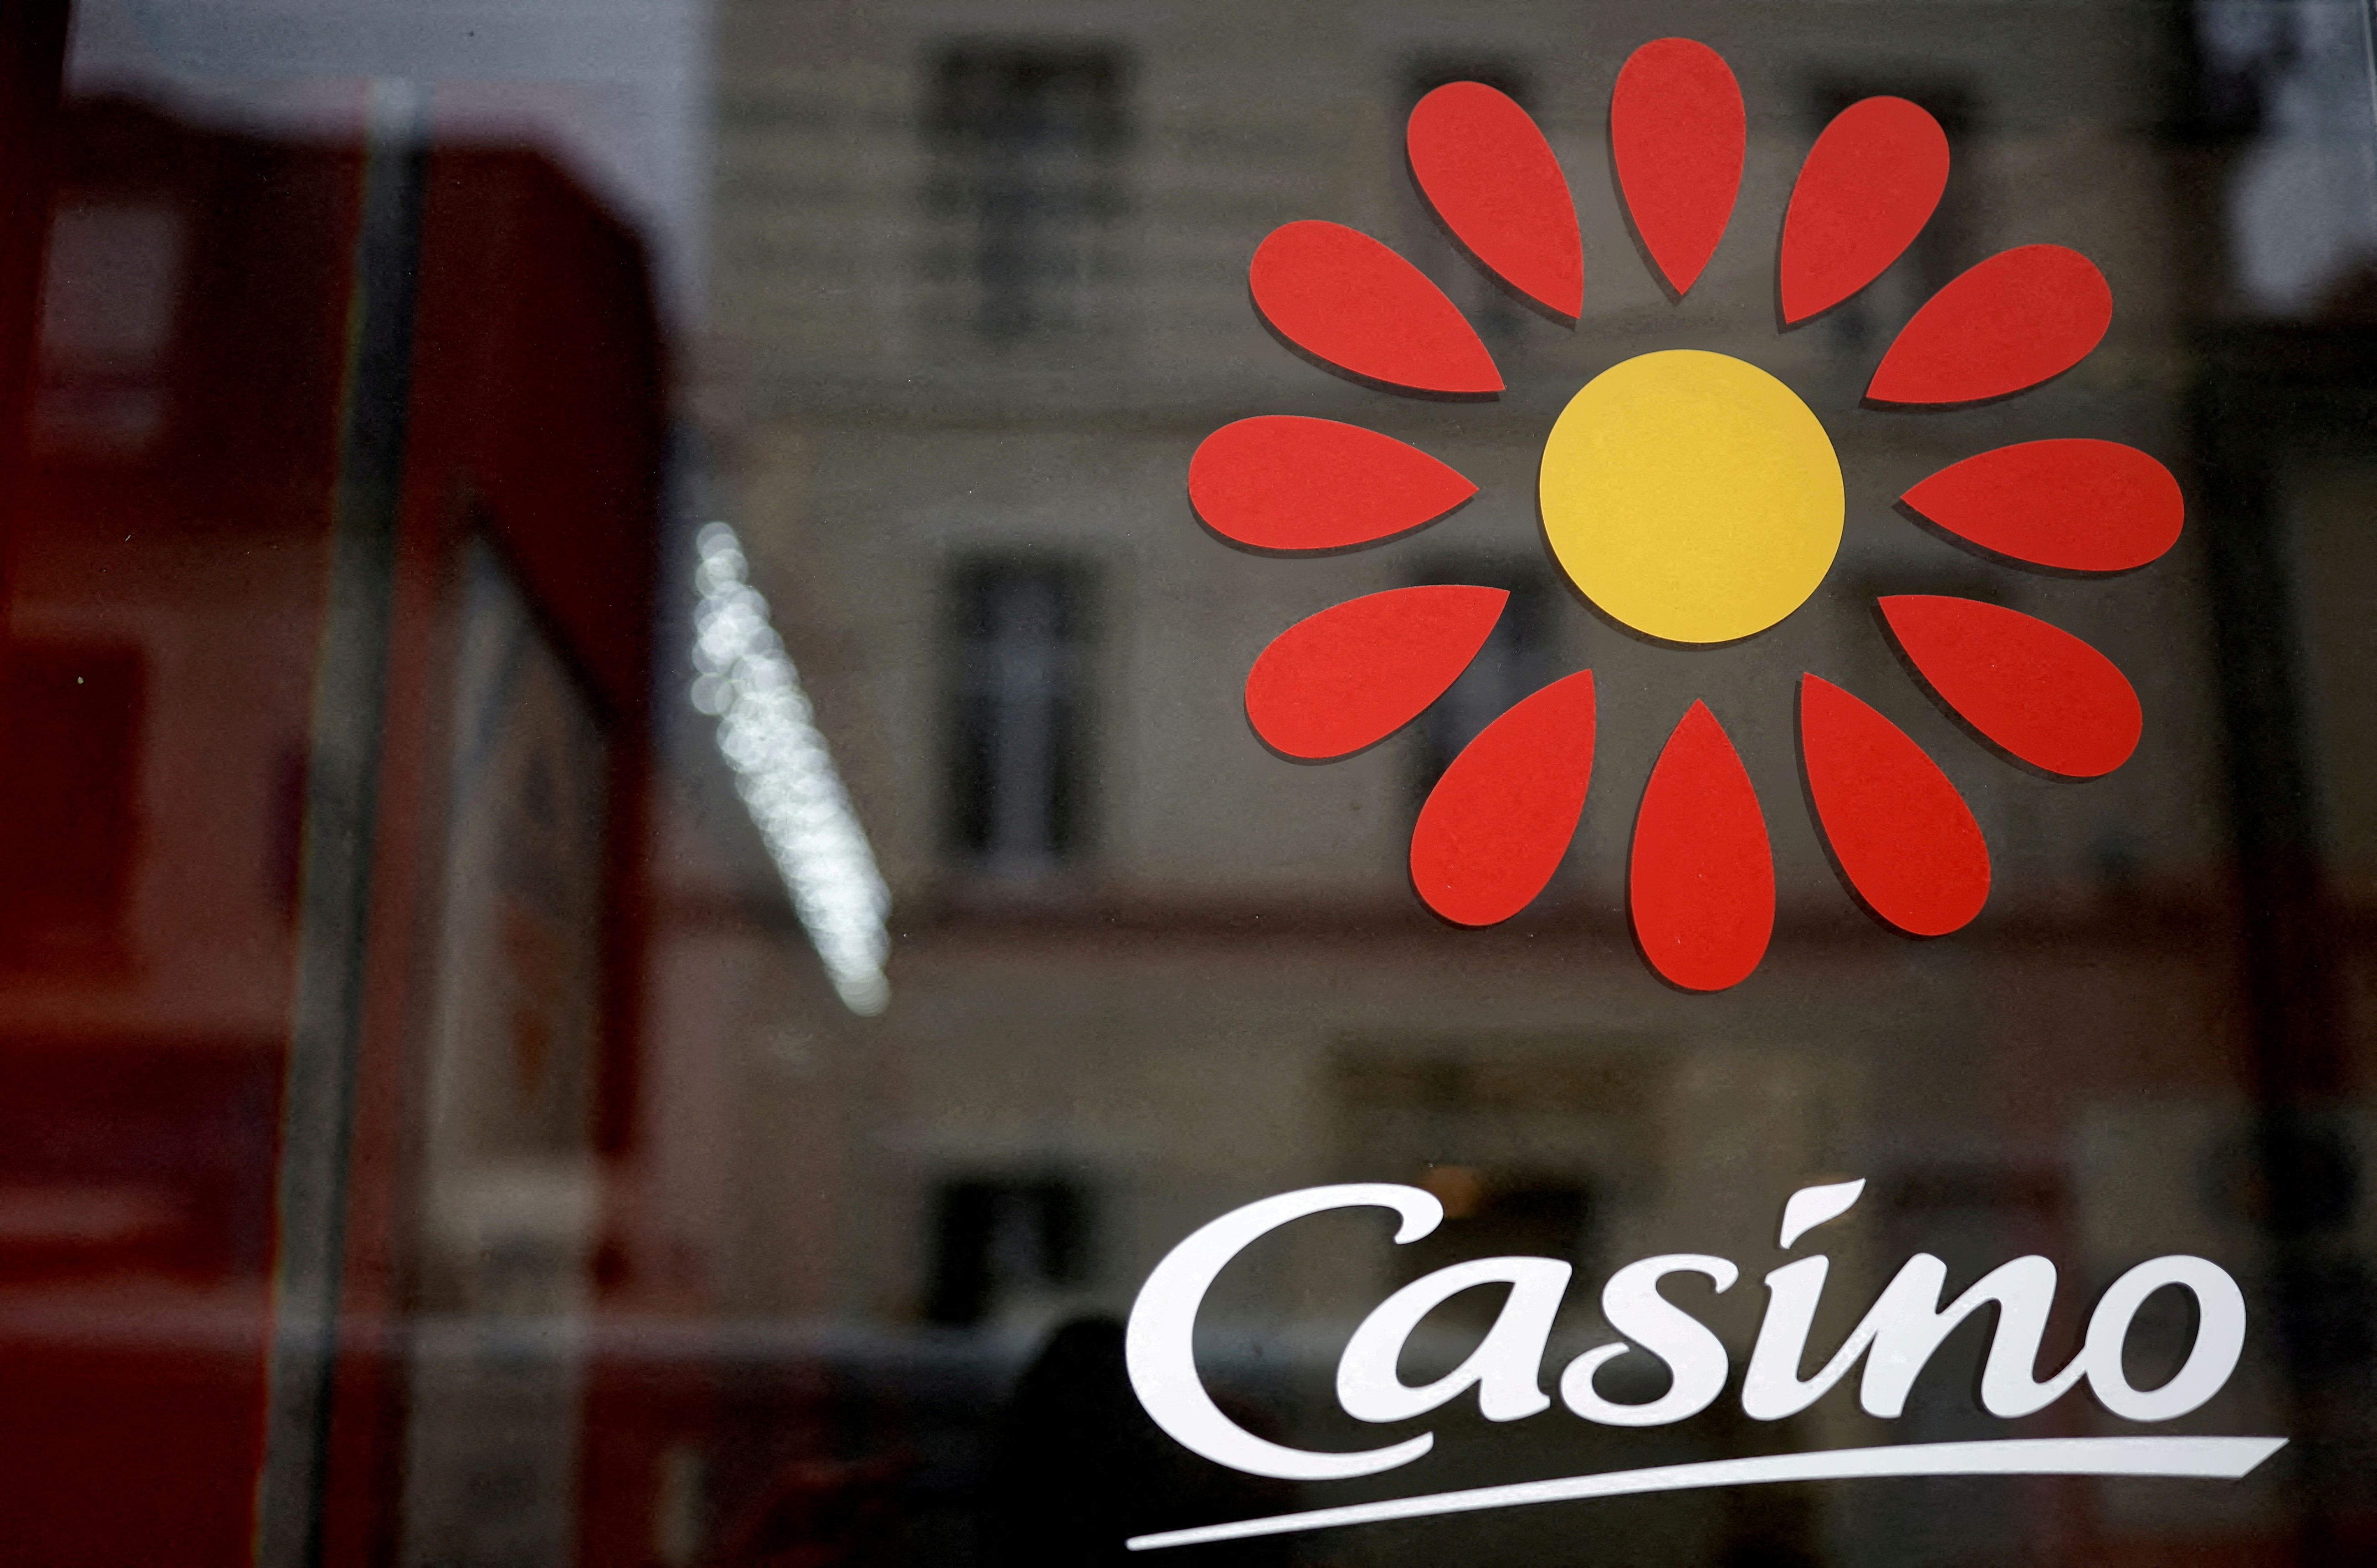 Casino placé en défaut de paiement partiel par l'agence Moody's